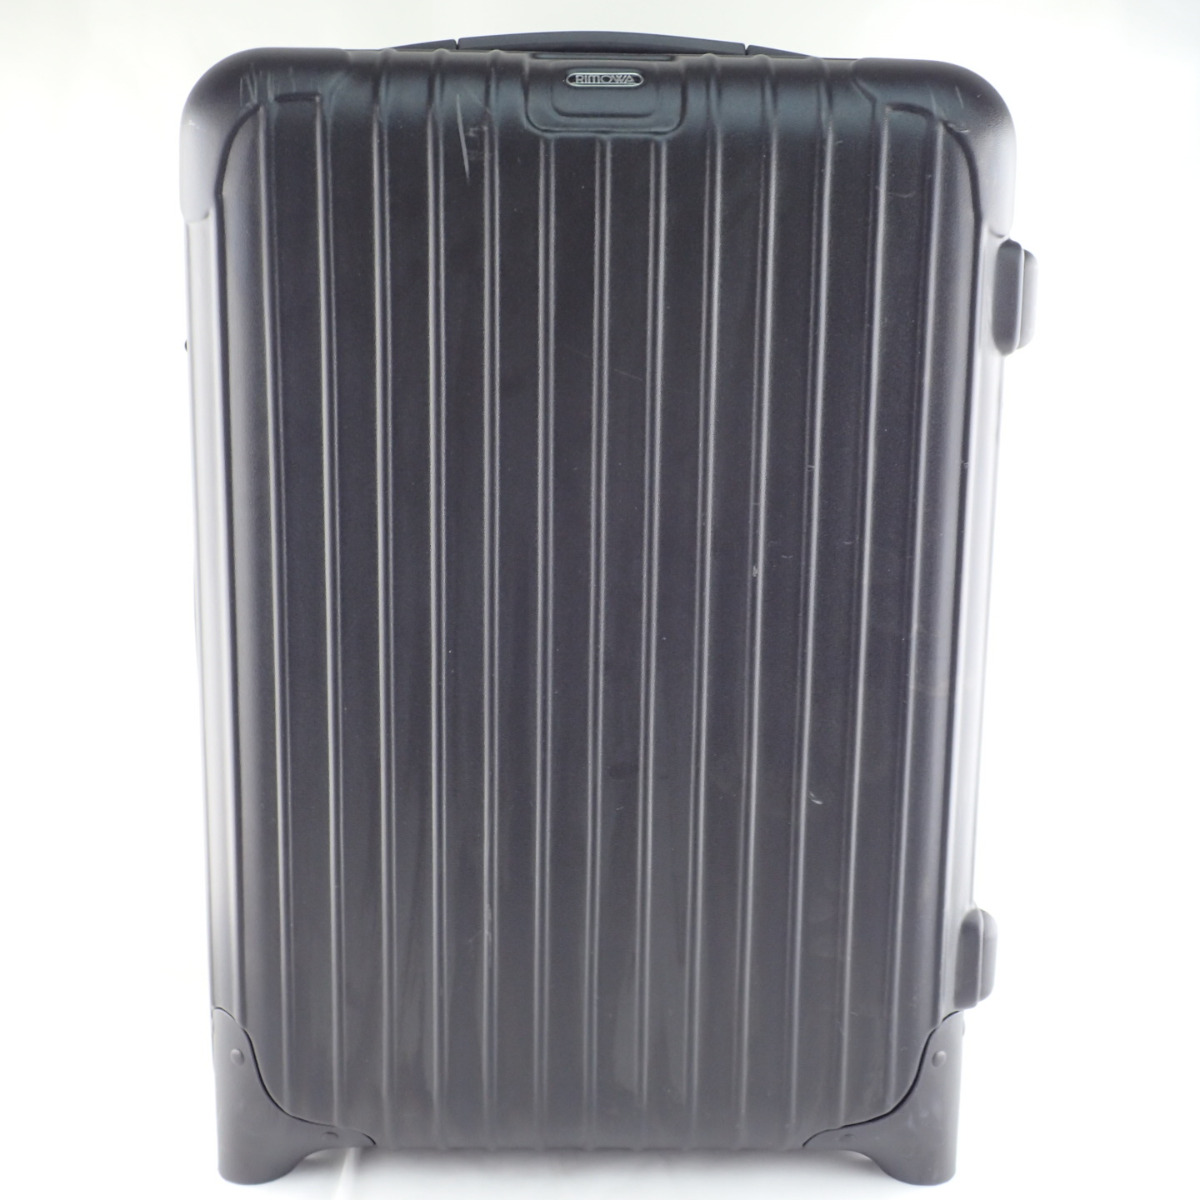 リモワの810.52 SALSAサルサ キャビンマルチホイール 4輪スーツケースの買取実績です。